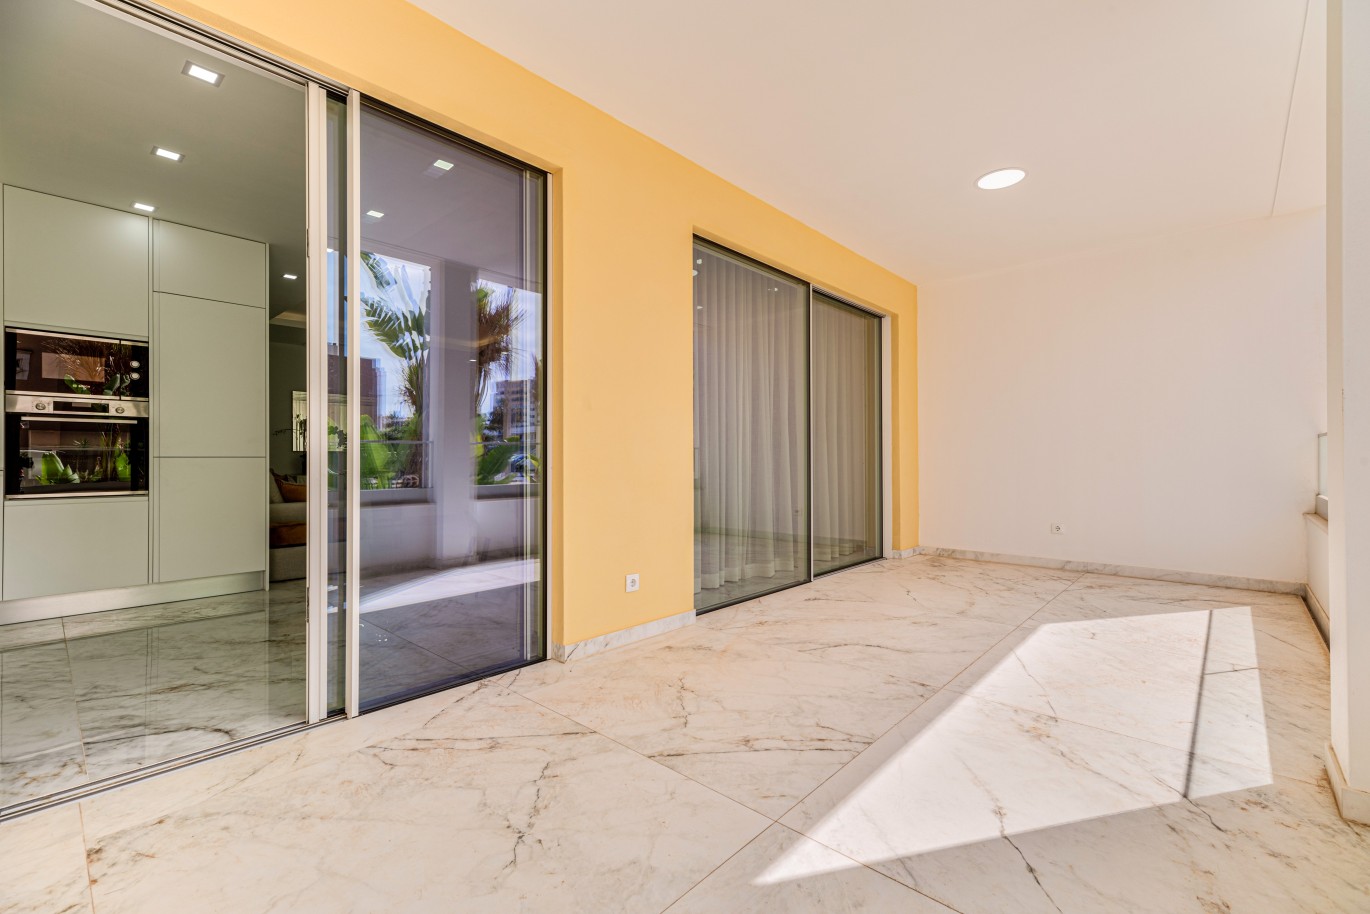 Apartamento, com terraço, para venda, em Lagos, Algarve_238085